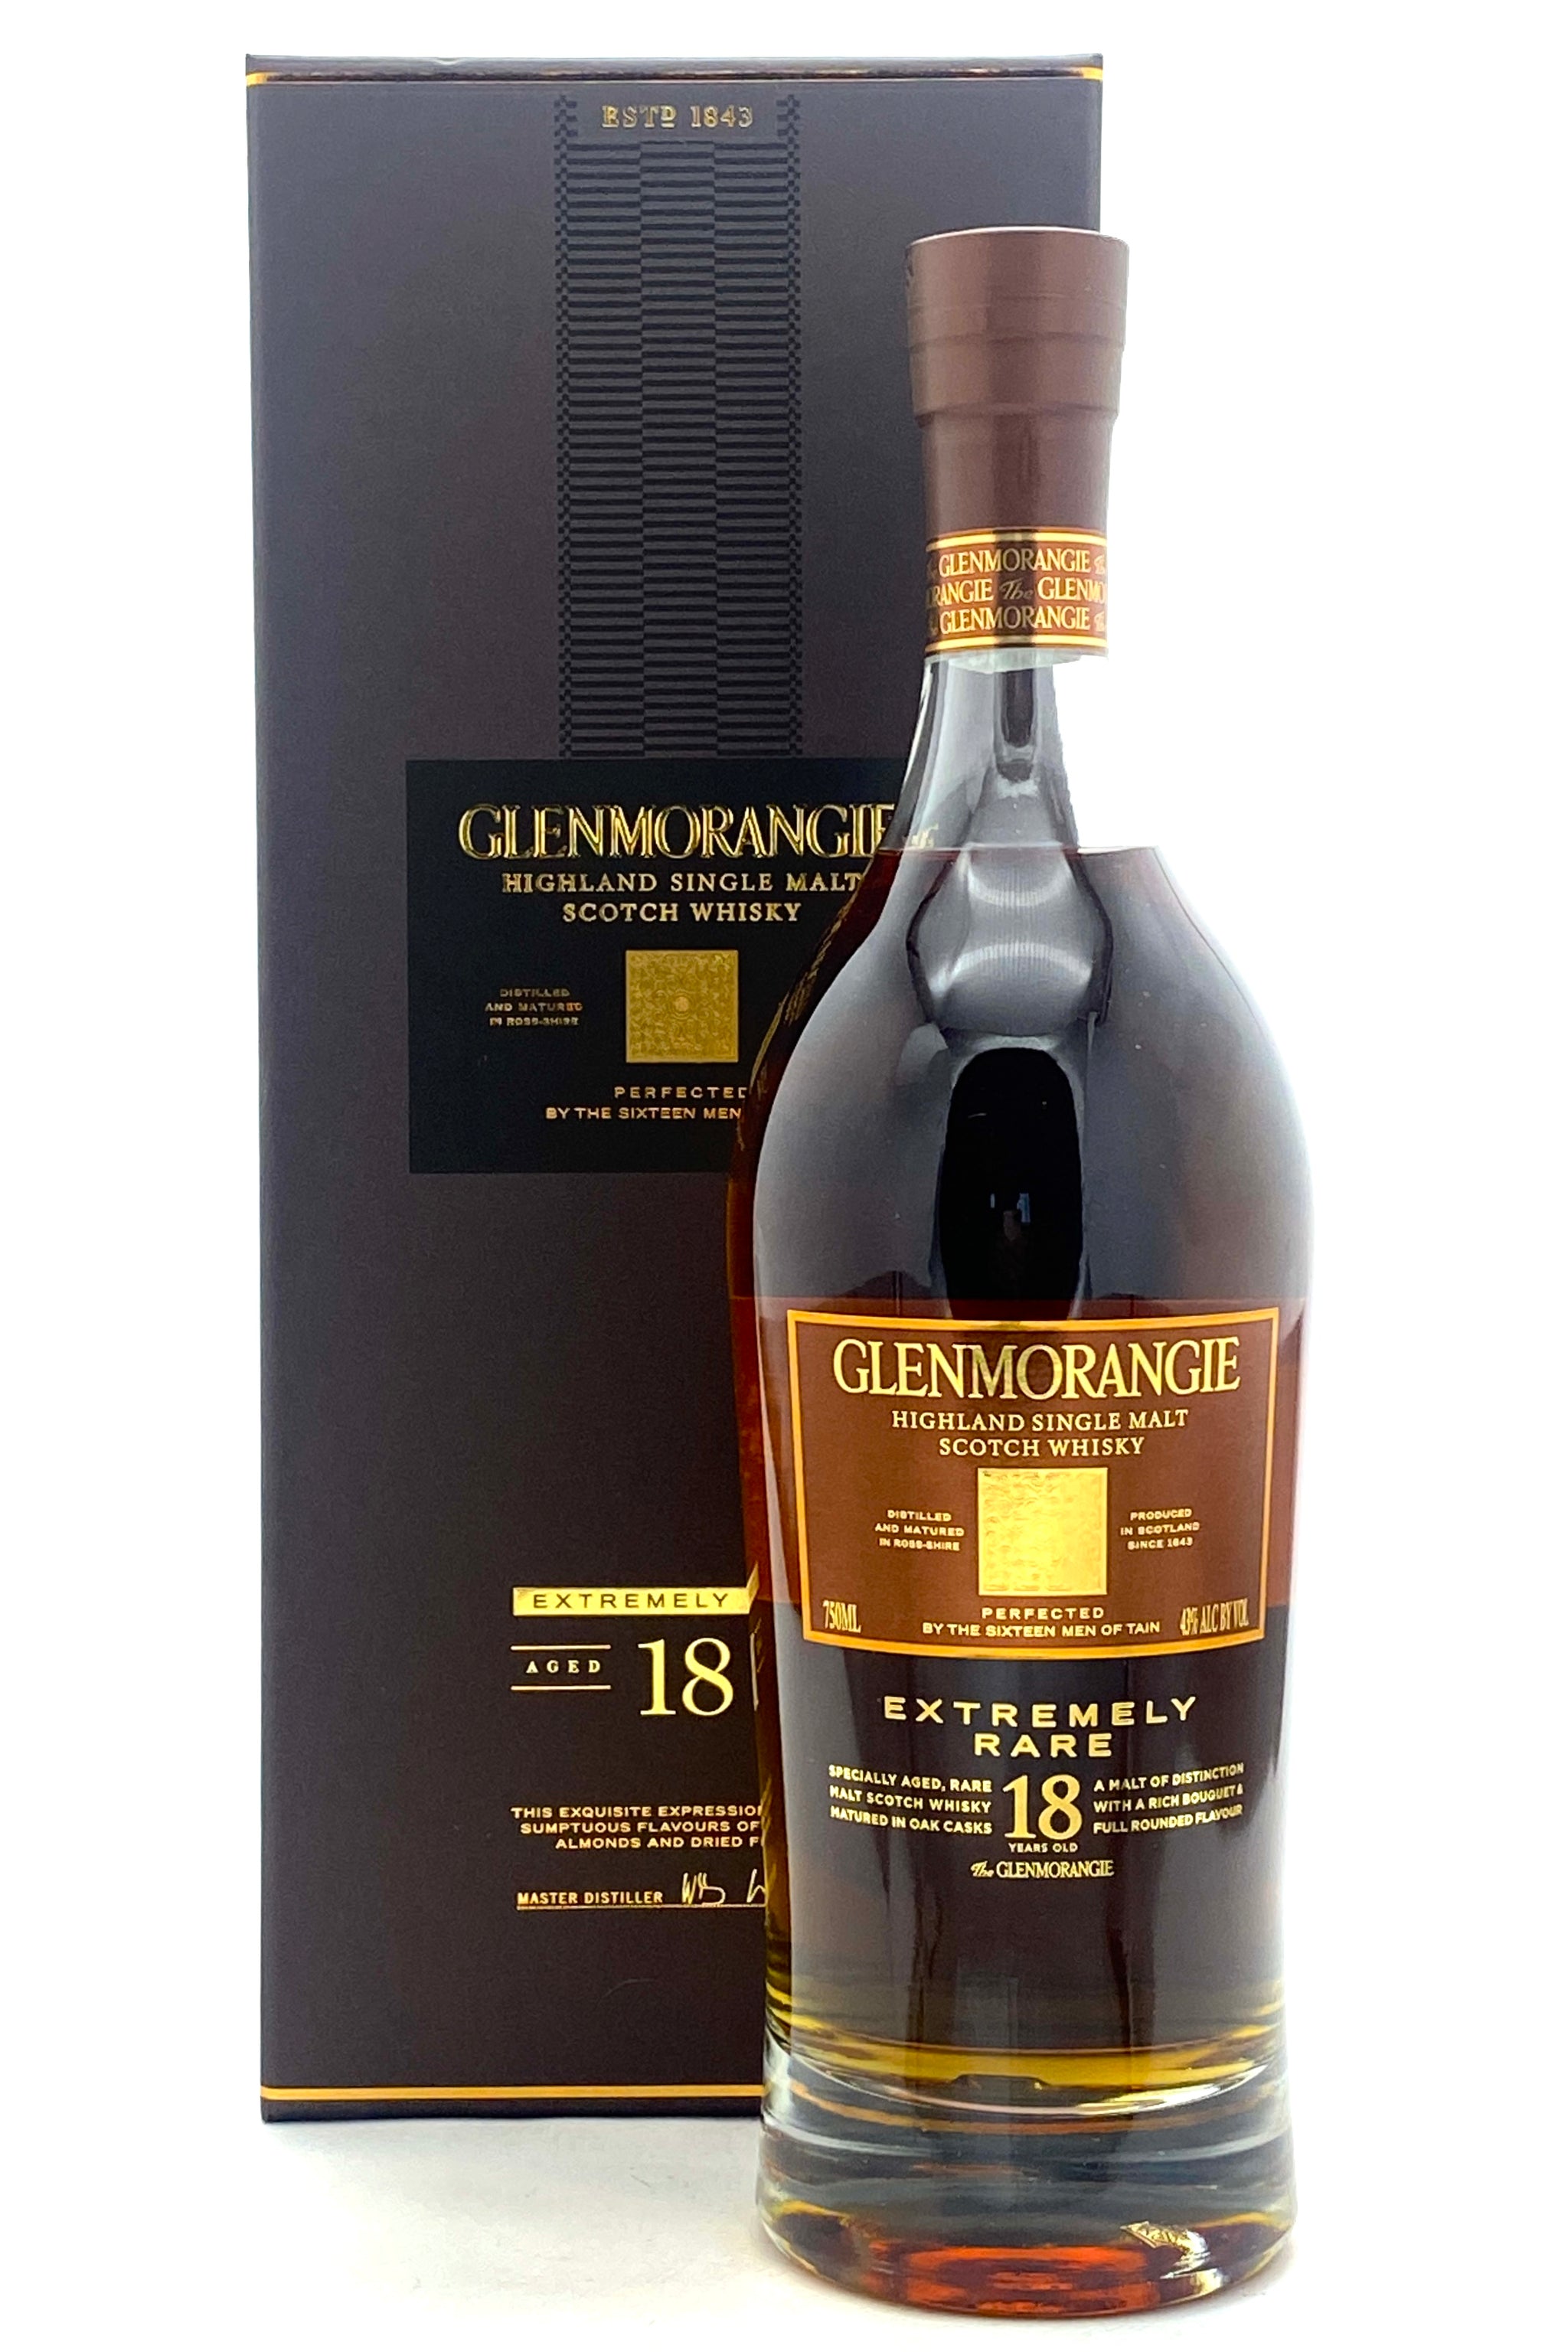 Glenmorangie Original 10 Yr Old Single Malt Scotch Whiskey (750 ML), Scotch